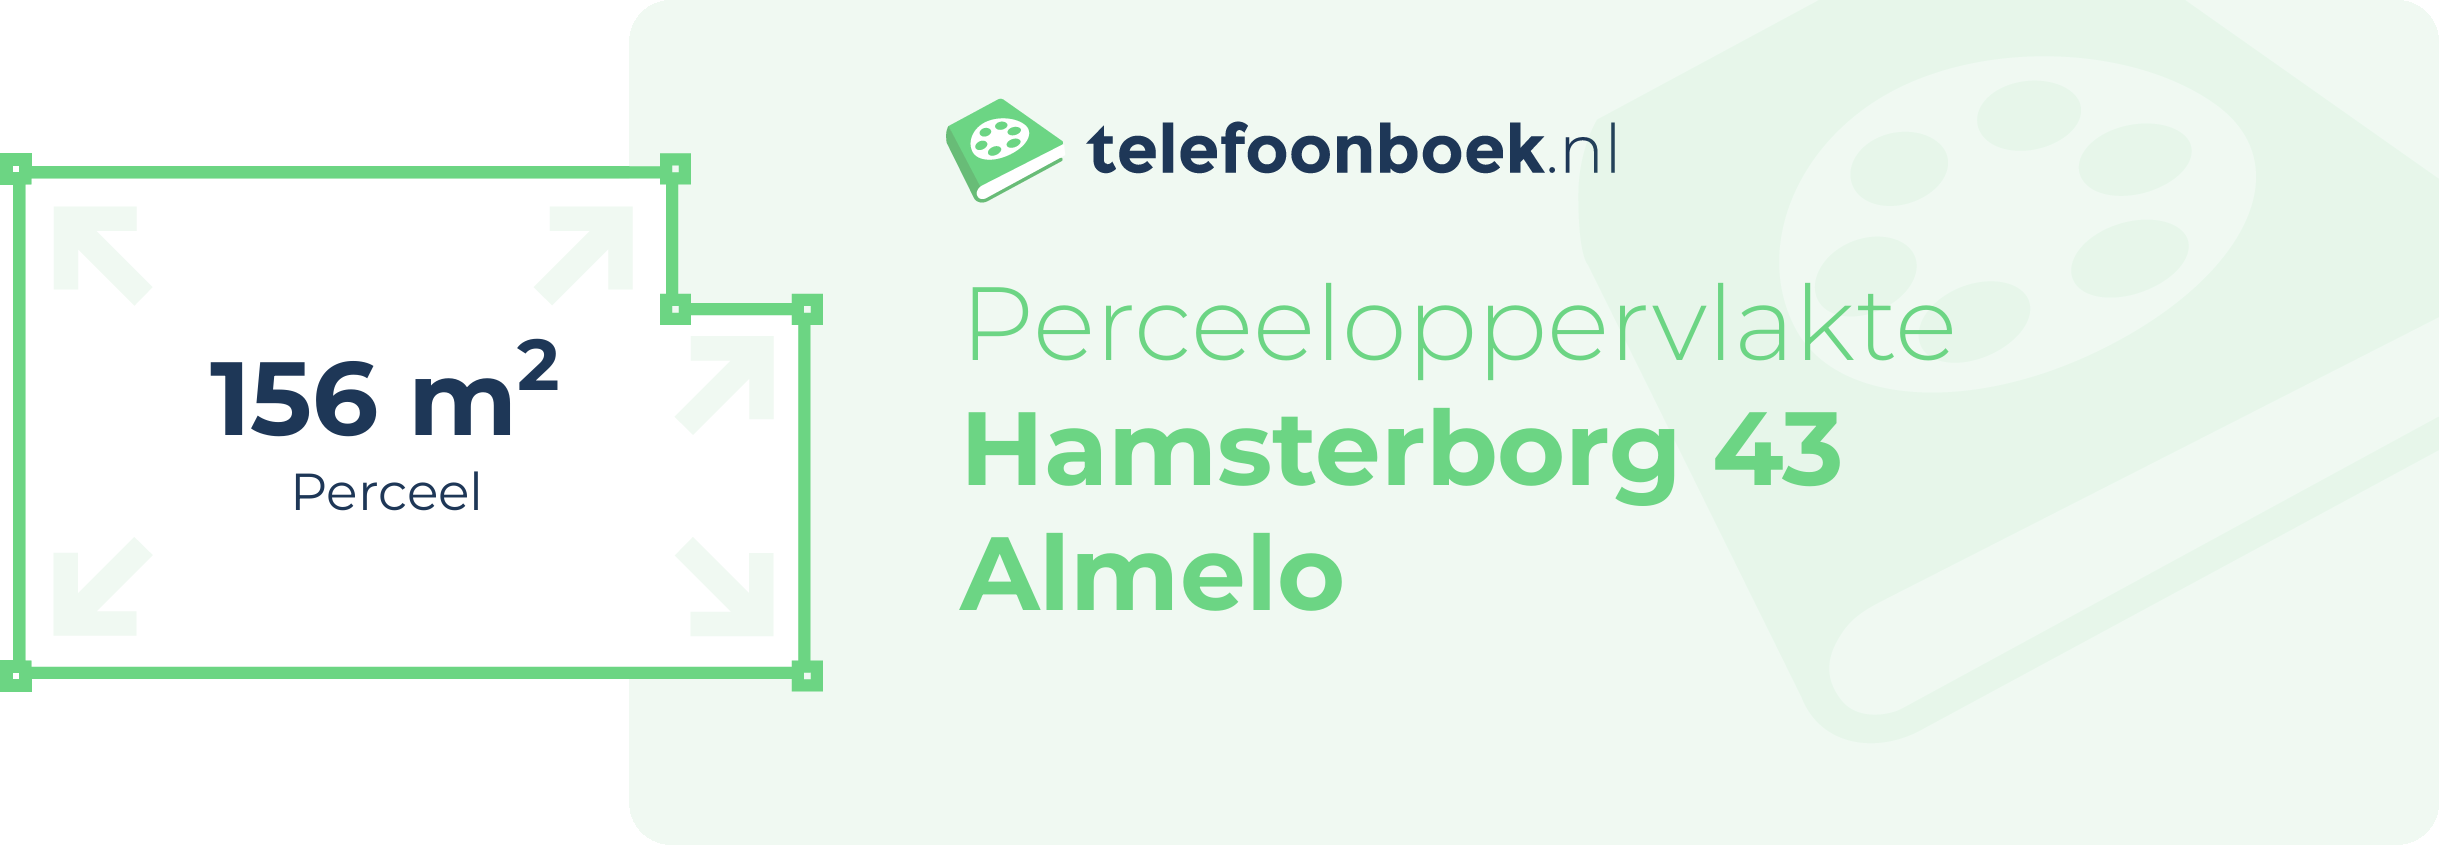 Perceeloppervlakte Hamsterborg 43 Almelo